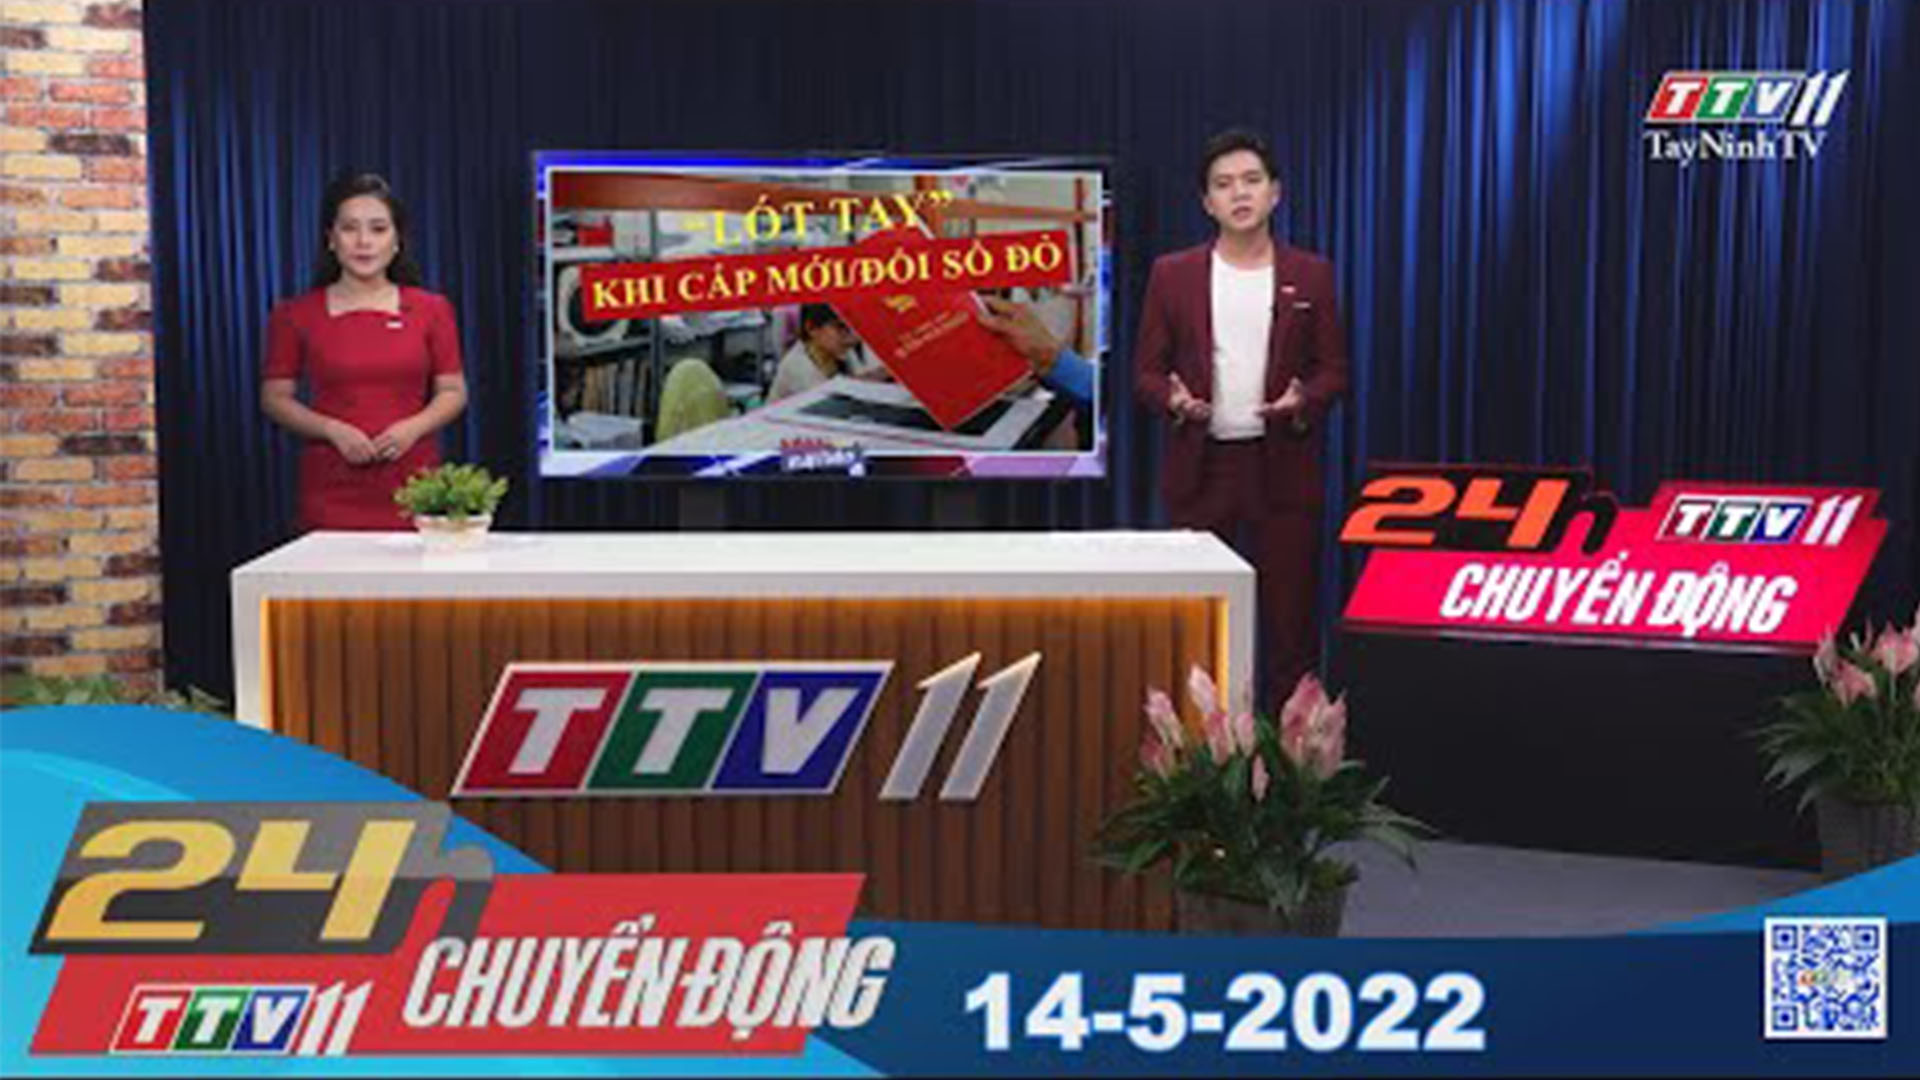 24h Chuyển động 14-5-2022 | Tin tức hôm nay | TayNinhTV